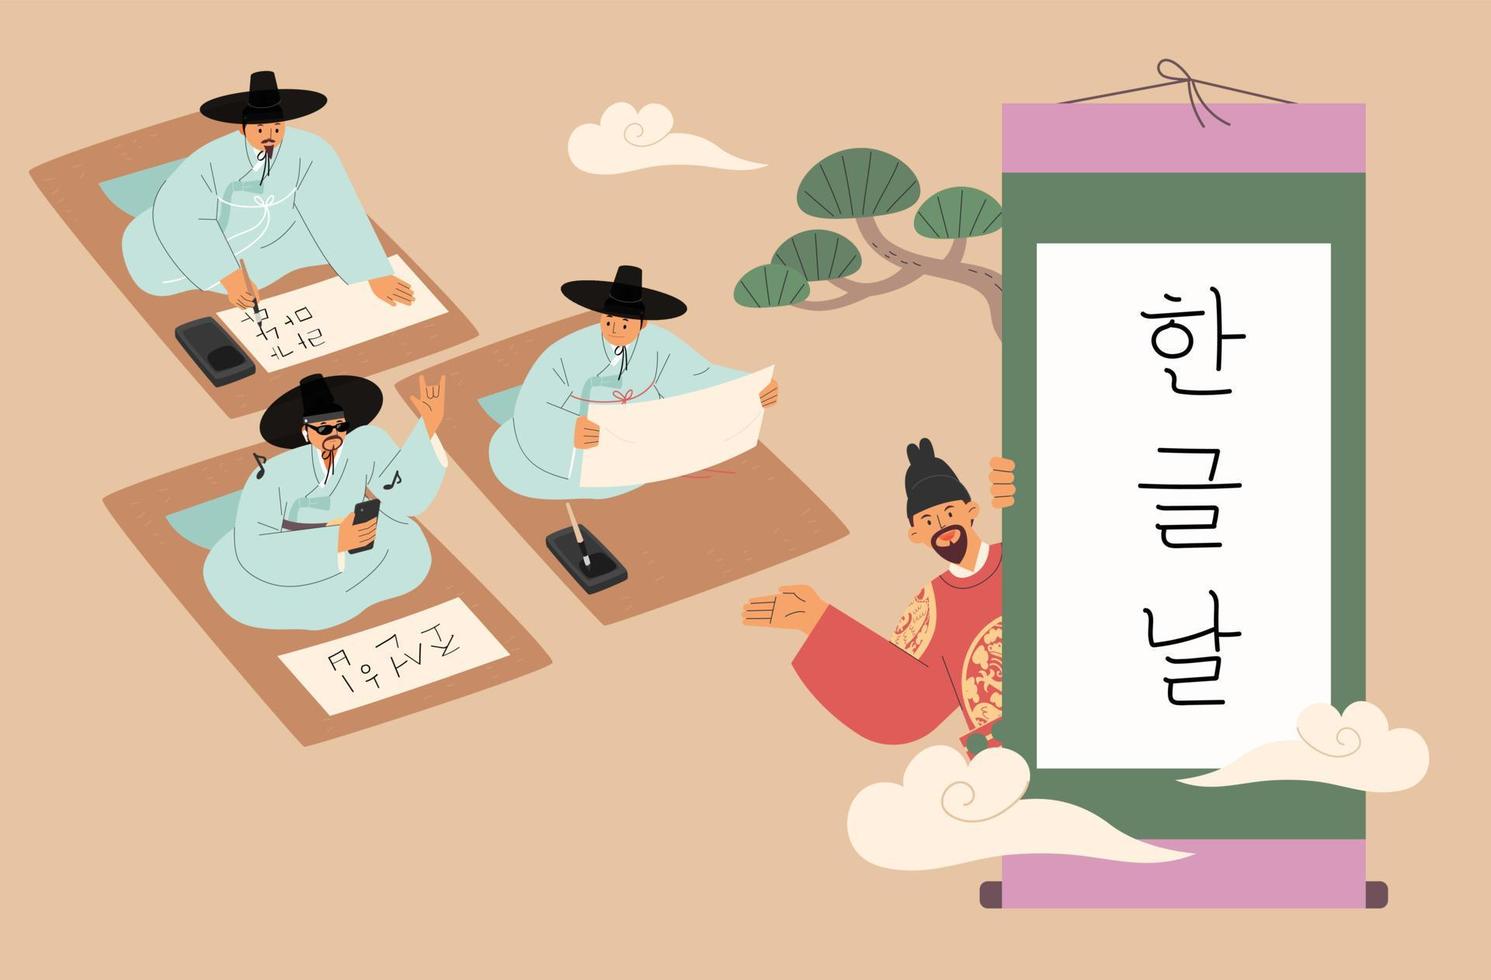 die leute tragen traditionelle koreanische kleidung und legen eine prüfung für einen schreibwettbewerb ab. König Sejong führt hinter der Schriftrolle. vektor